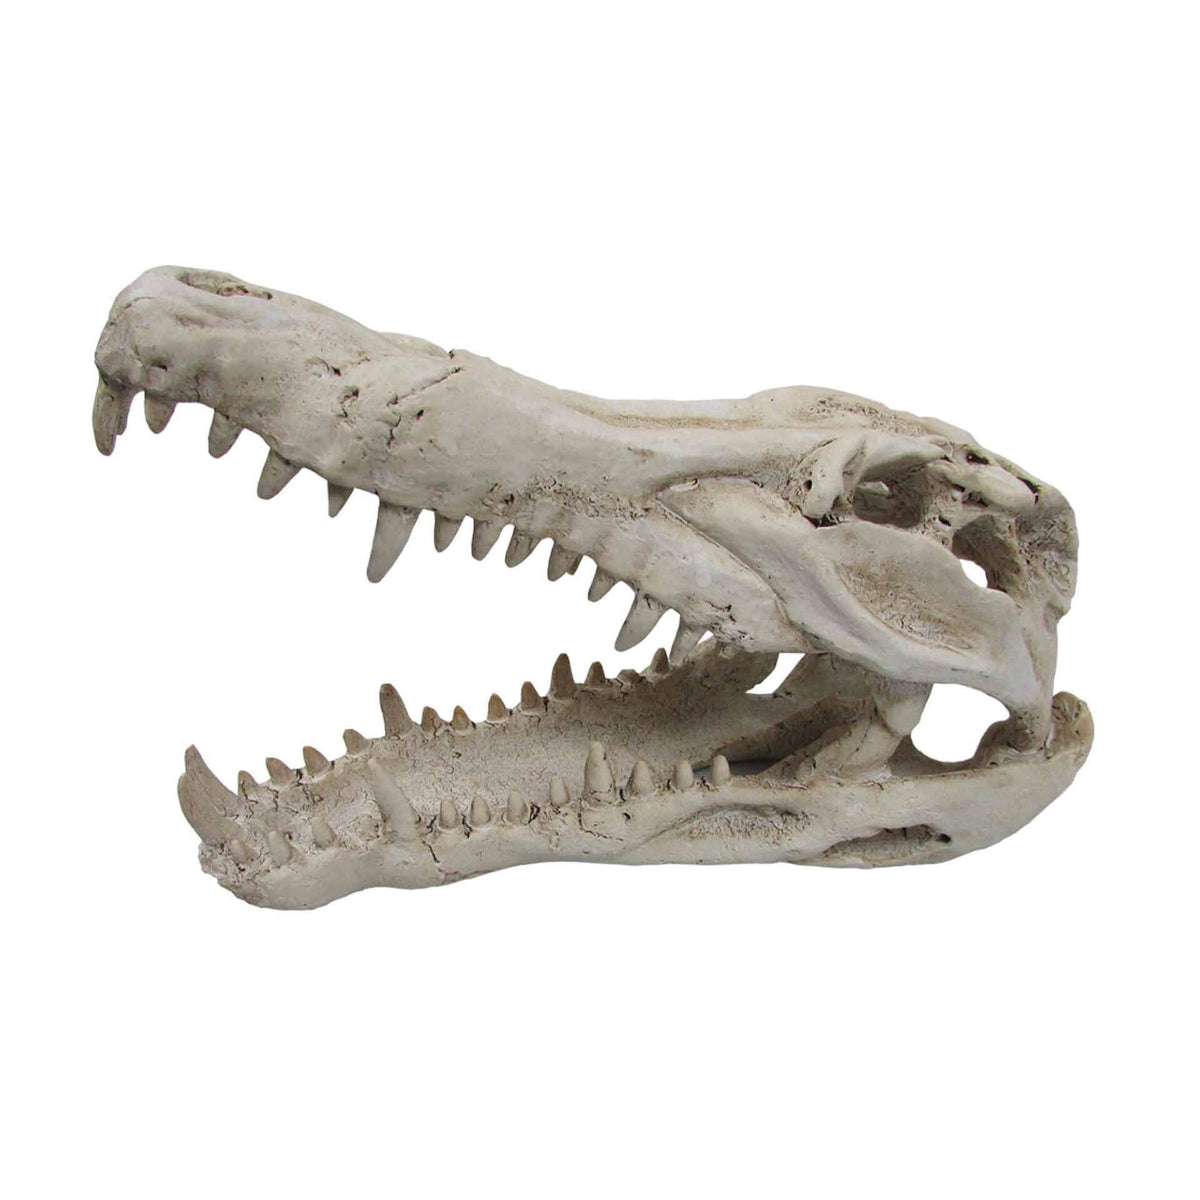 Cros Skull Medium - 25 x 11.5 x 15.5cm